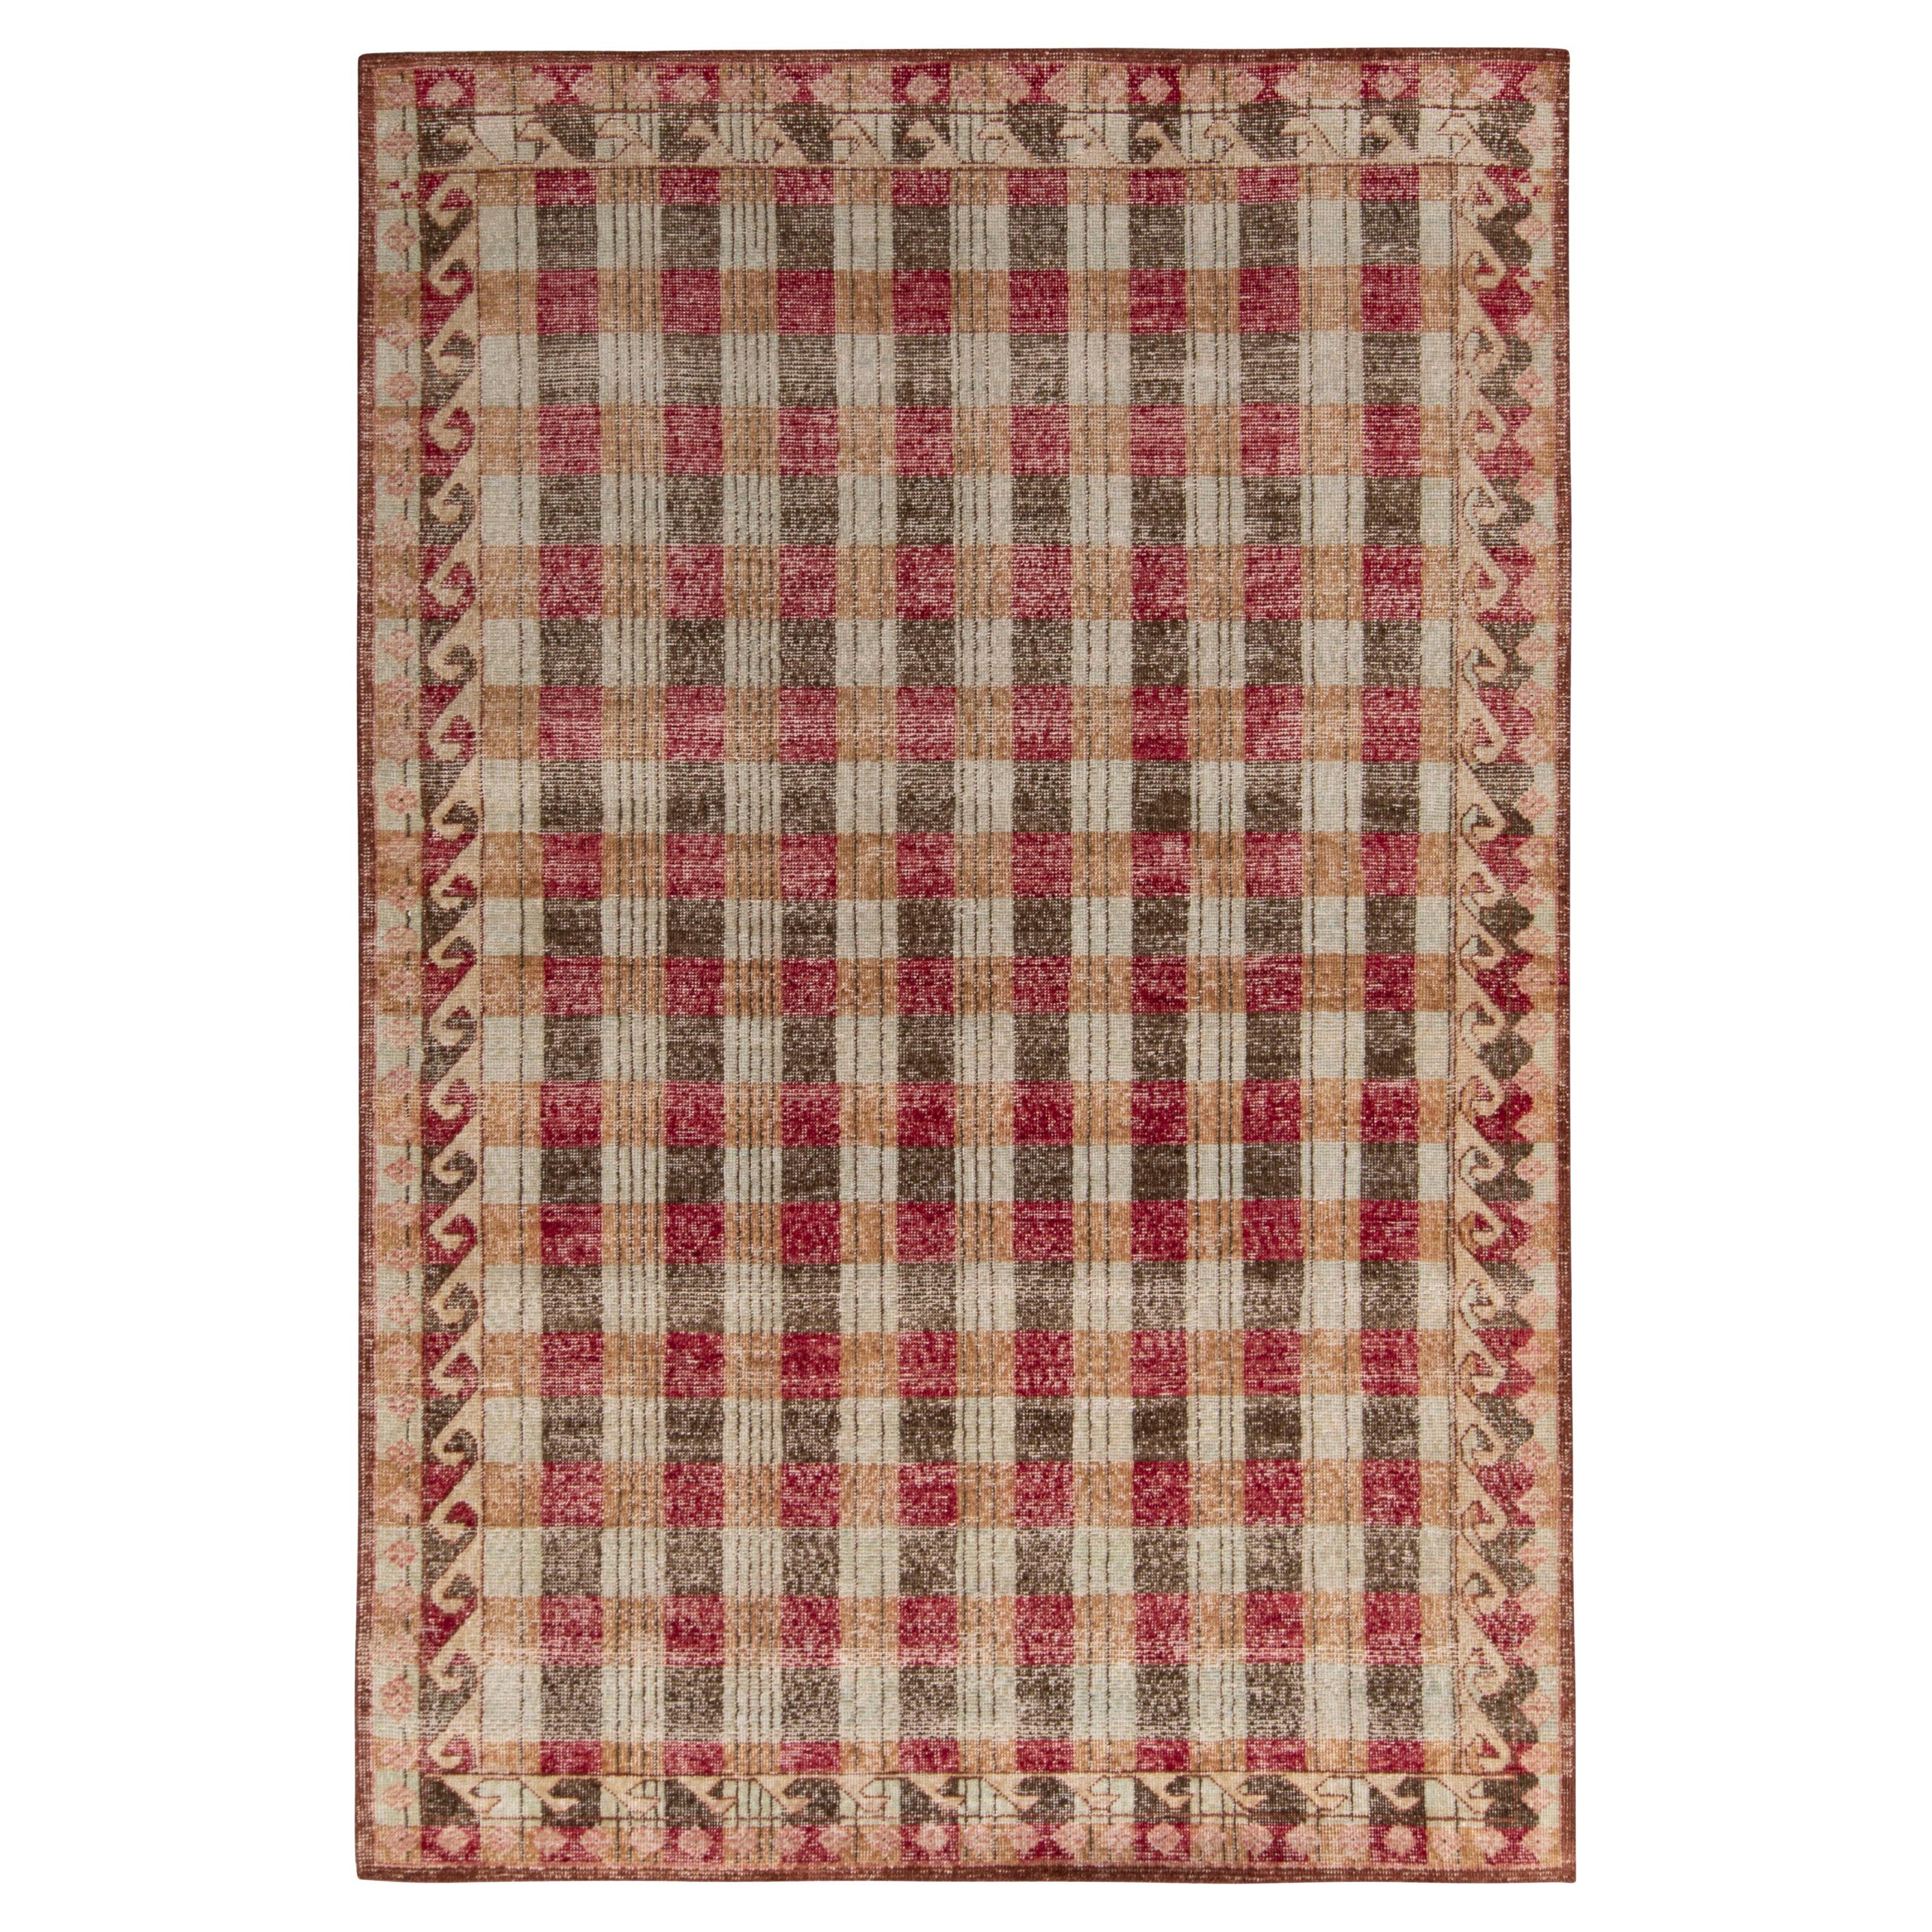 Rug & Kilim's Distressed Classic Style Rug in Beige-Brown, Red Geometric Pattern (tapis de style classique vieilli en beige et brun, motif géométrique rouge)